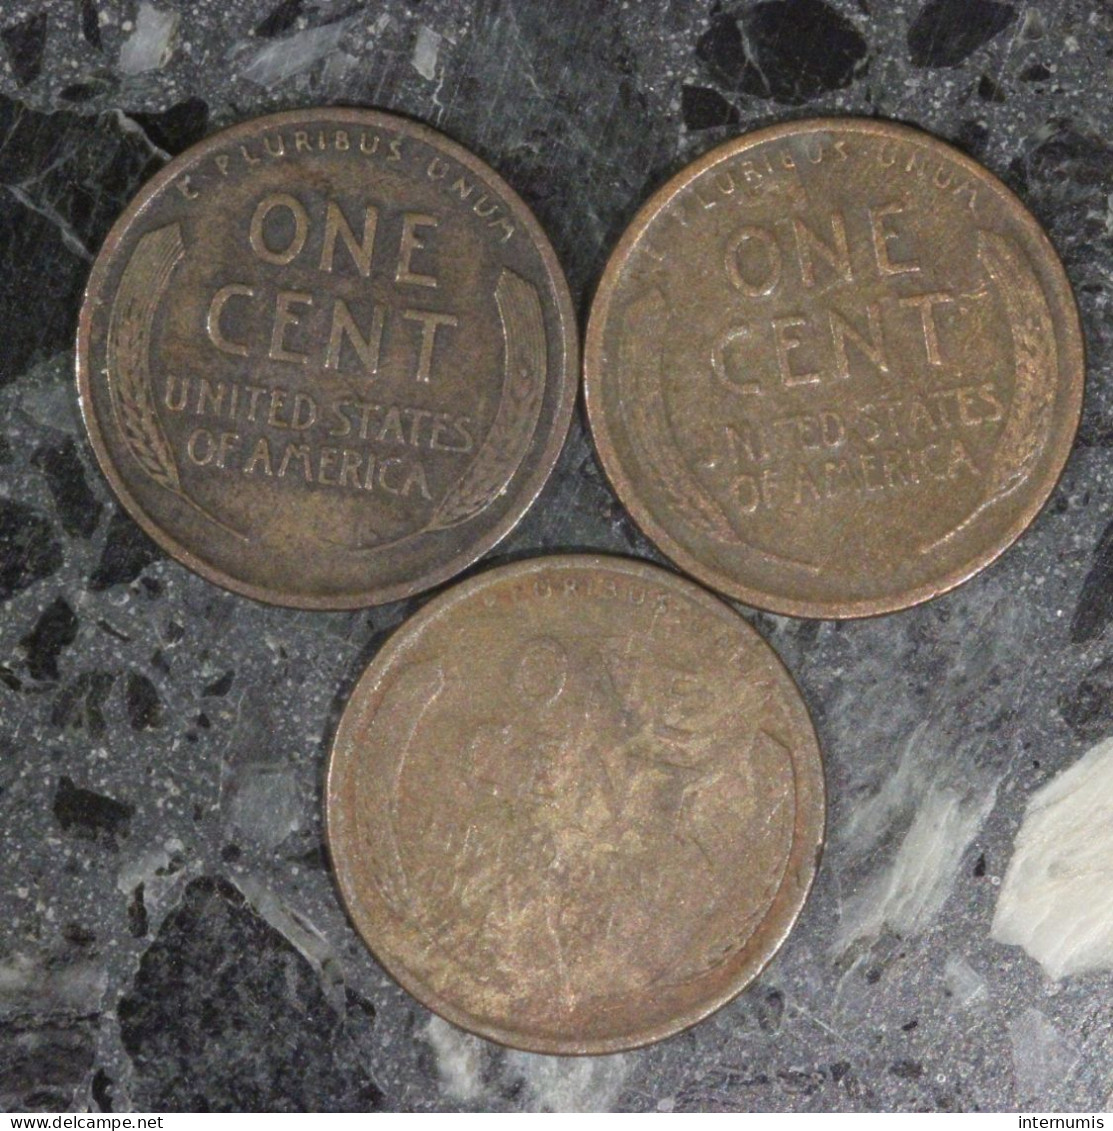 Etats-Unis / USA LOT (3) : 1 Cents 1909, 1916 & 1920 - Lincoln - Vrac - Monnaies